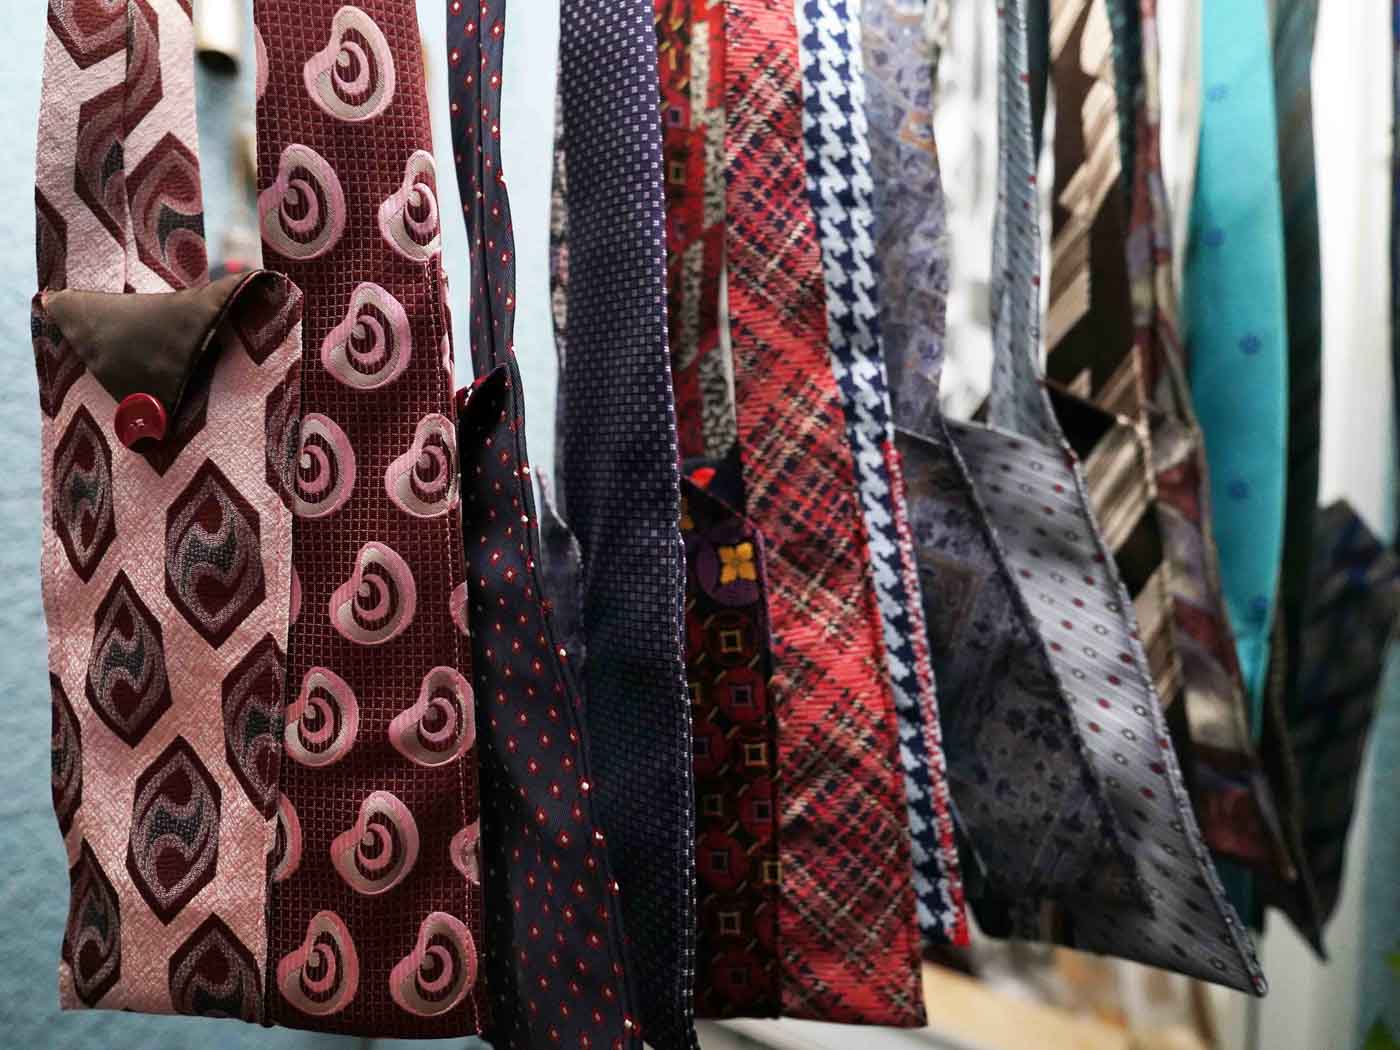 In Else’s Textilwerkstatt genähte Taschen aus bunten Krawatten hängen nebeneinander.